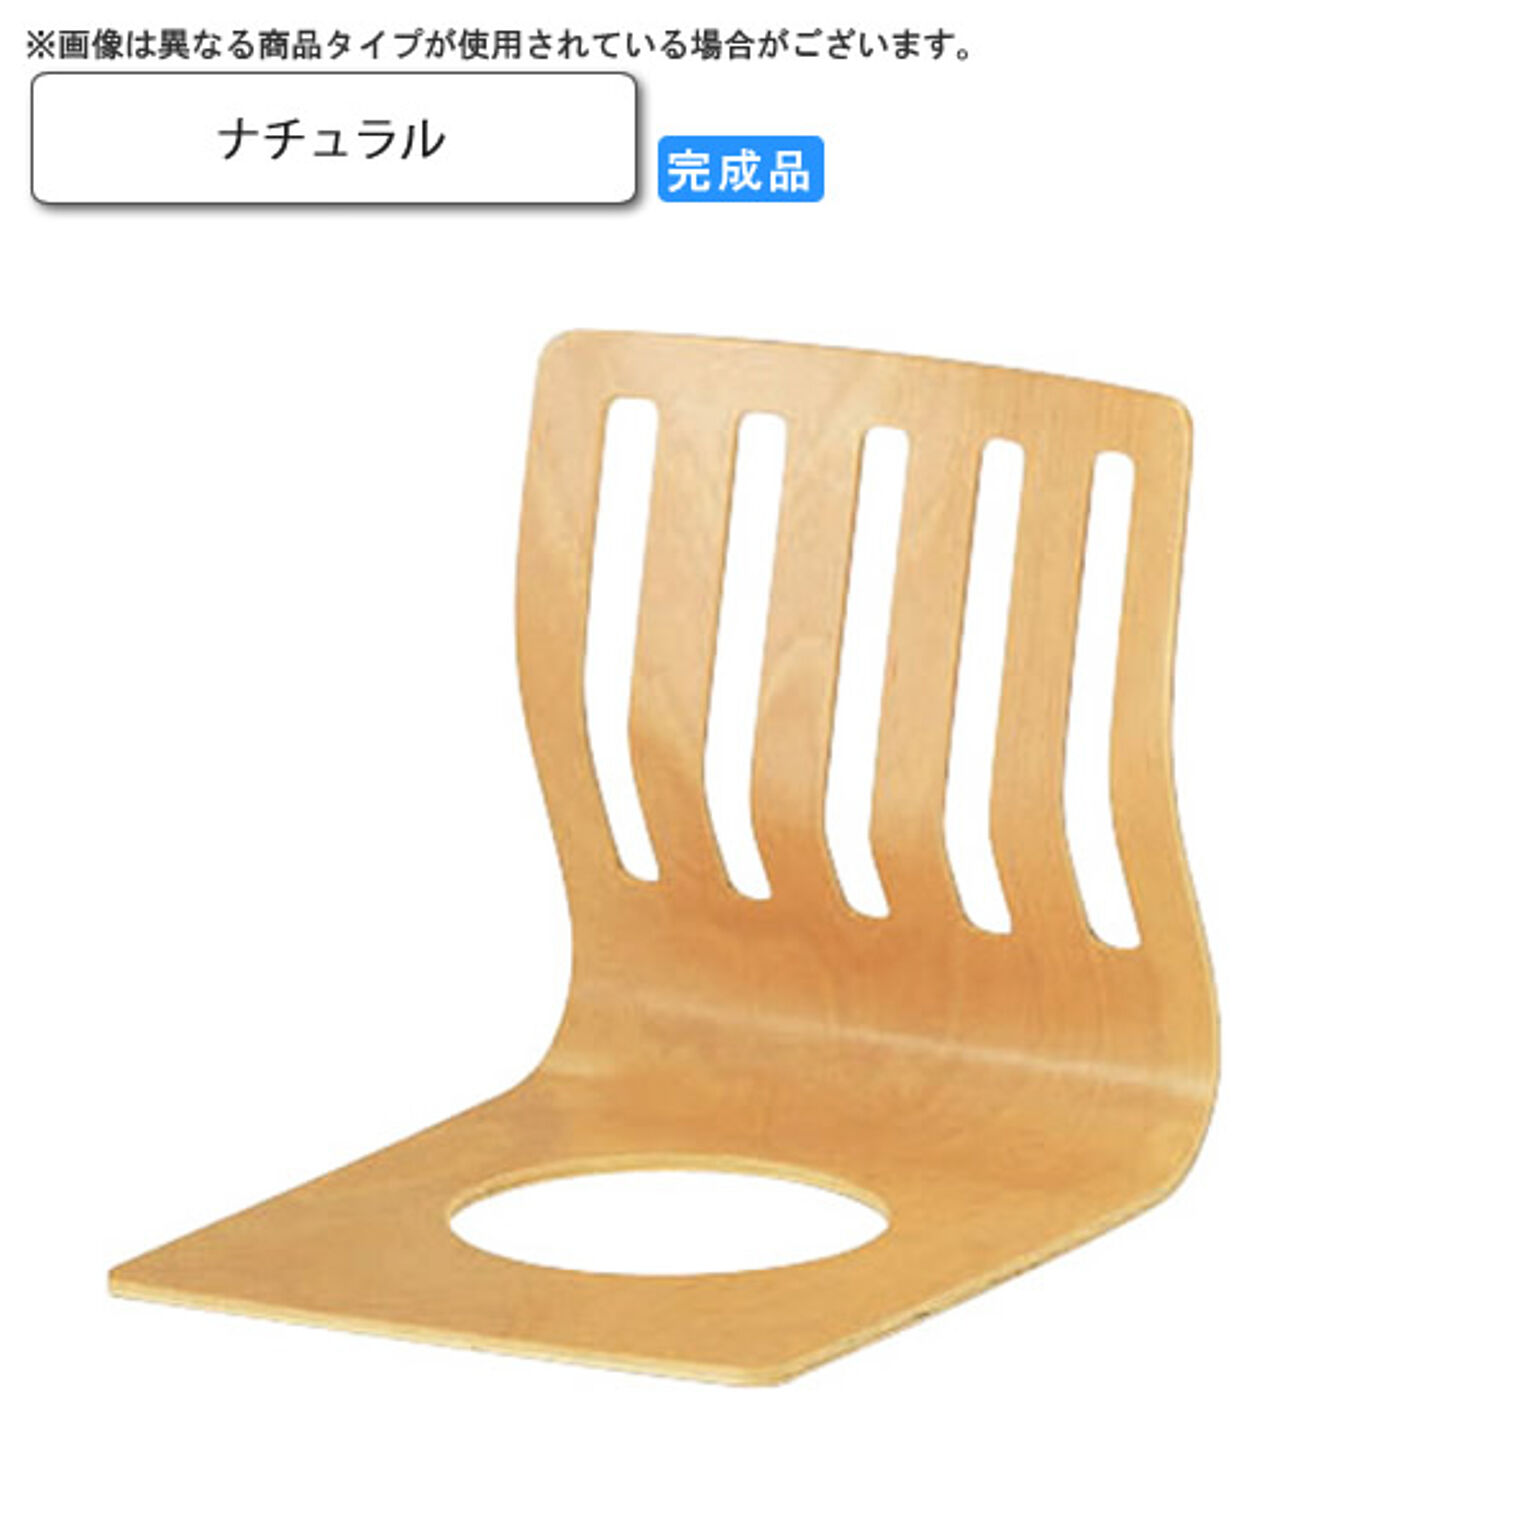 座椅子 ナチュラル 座椅子 業務用家具：wood japaneseシリーズ★ ノーク ナチュラル(natural) (和風)